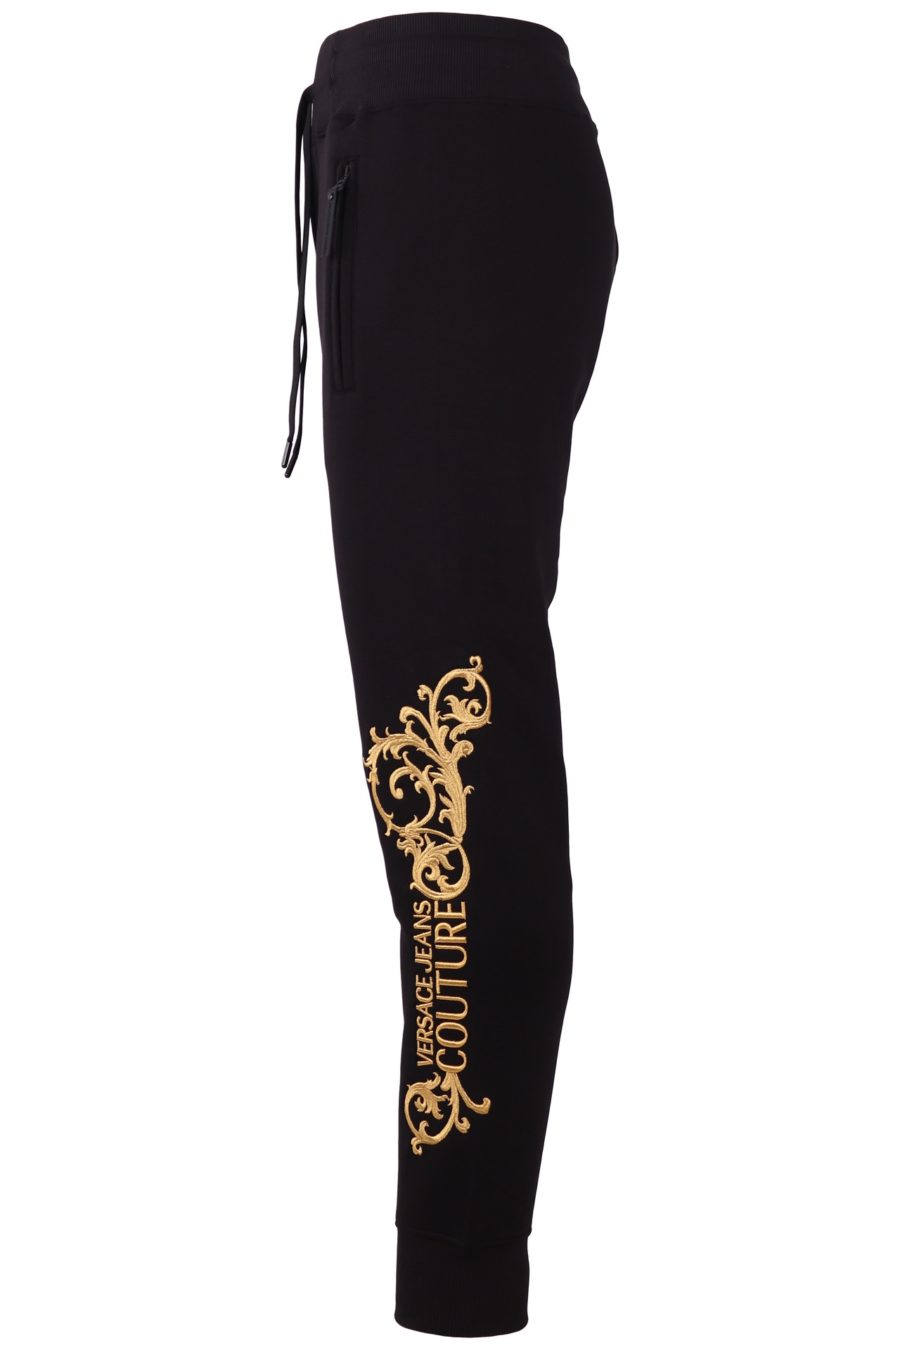 Pantalón de chándal Versace Jeans Couture de color negro con logo bordado - 381bdd3285dbb41c149b6b1346cacf7d5881401a